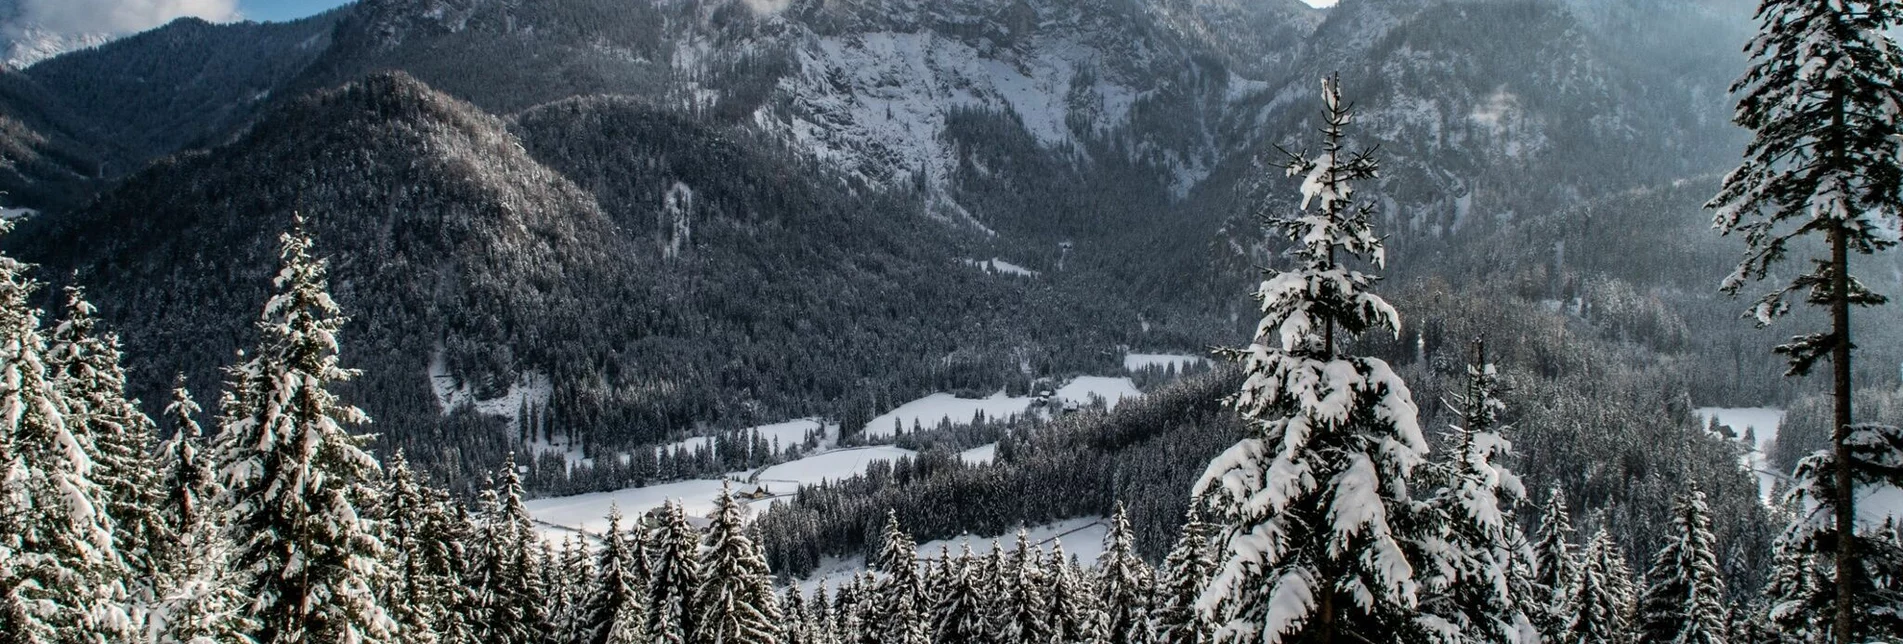 Schneeschuh Panorama Tour Hinterwildalpen - Touren-Impression #1 | © TV Gesäuse